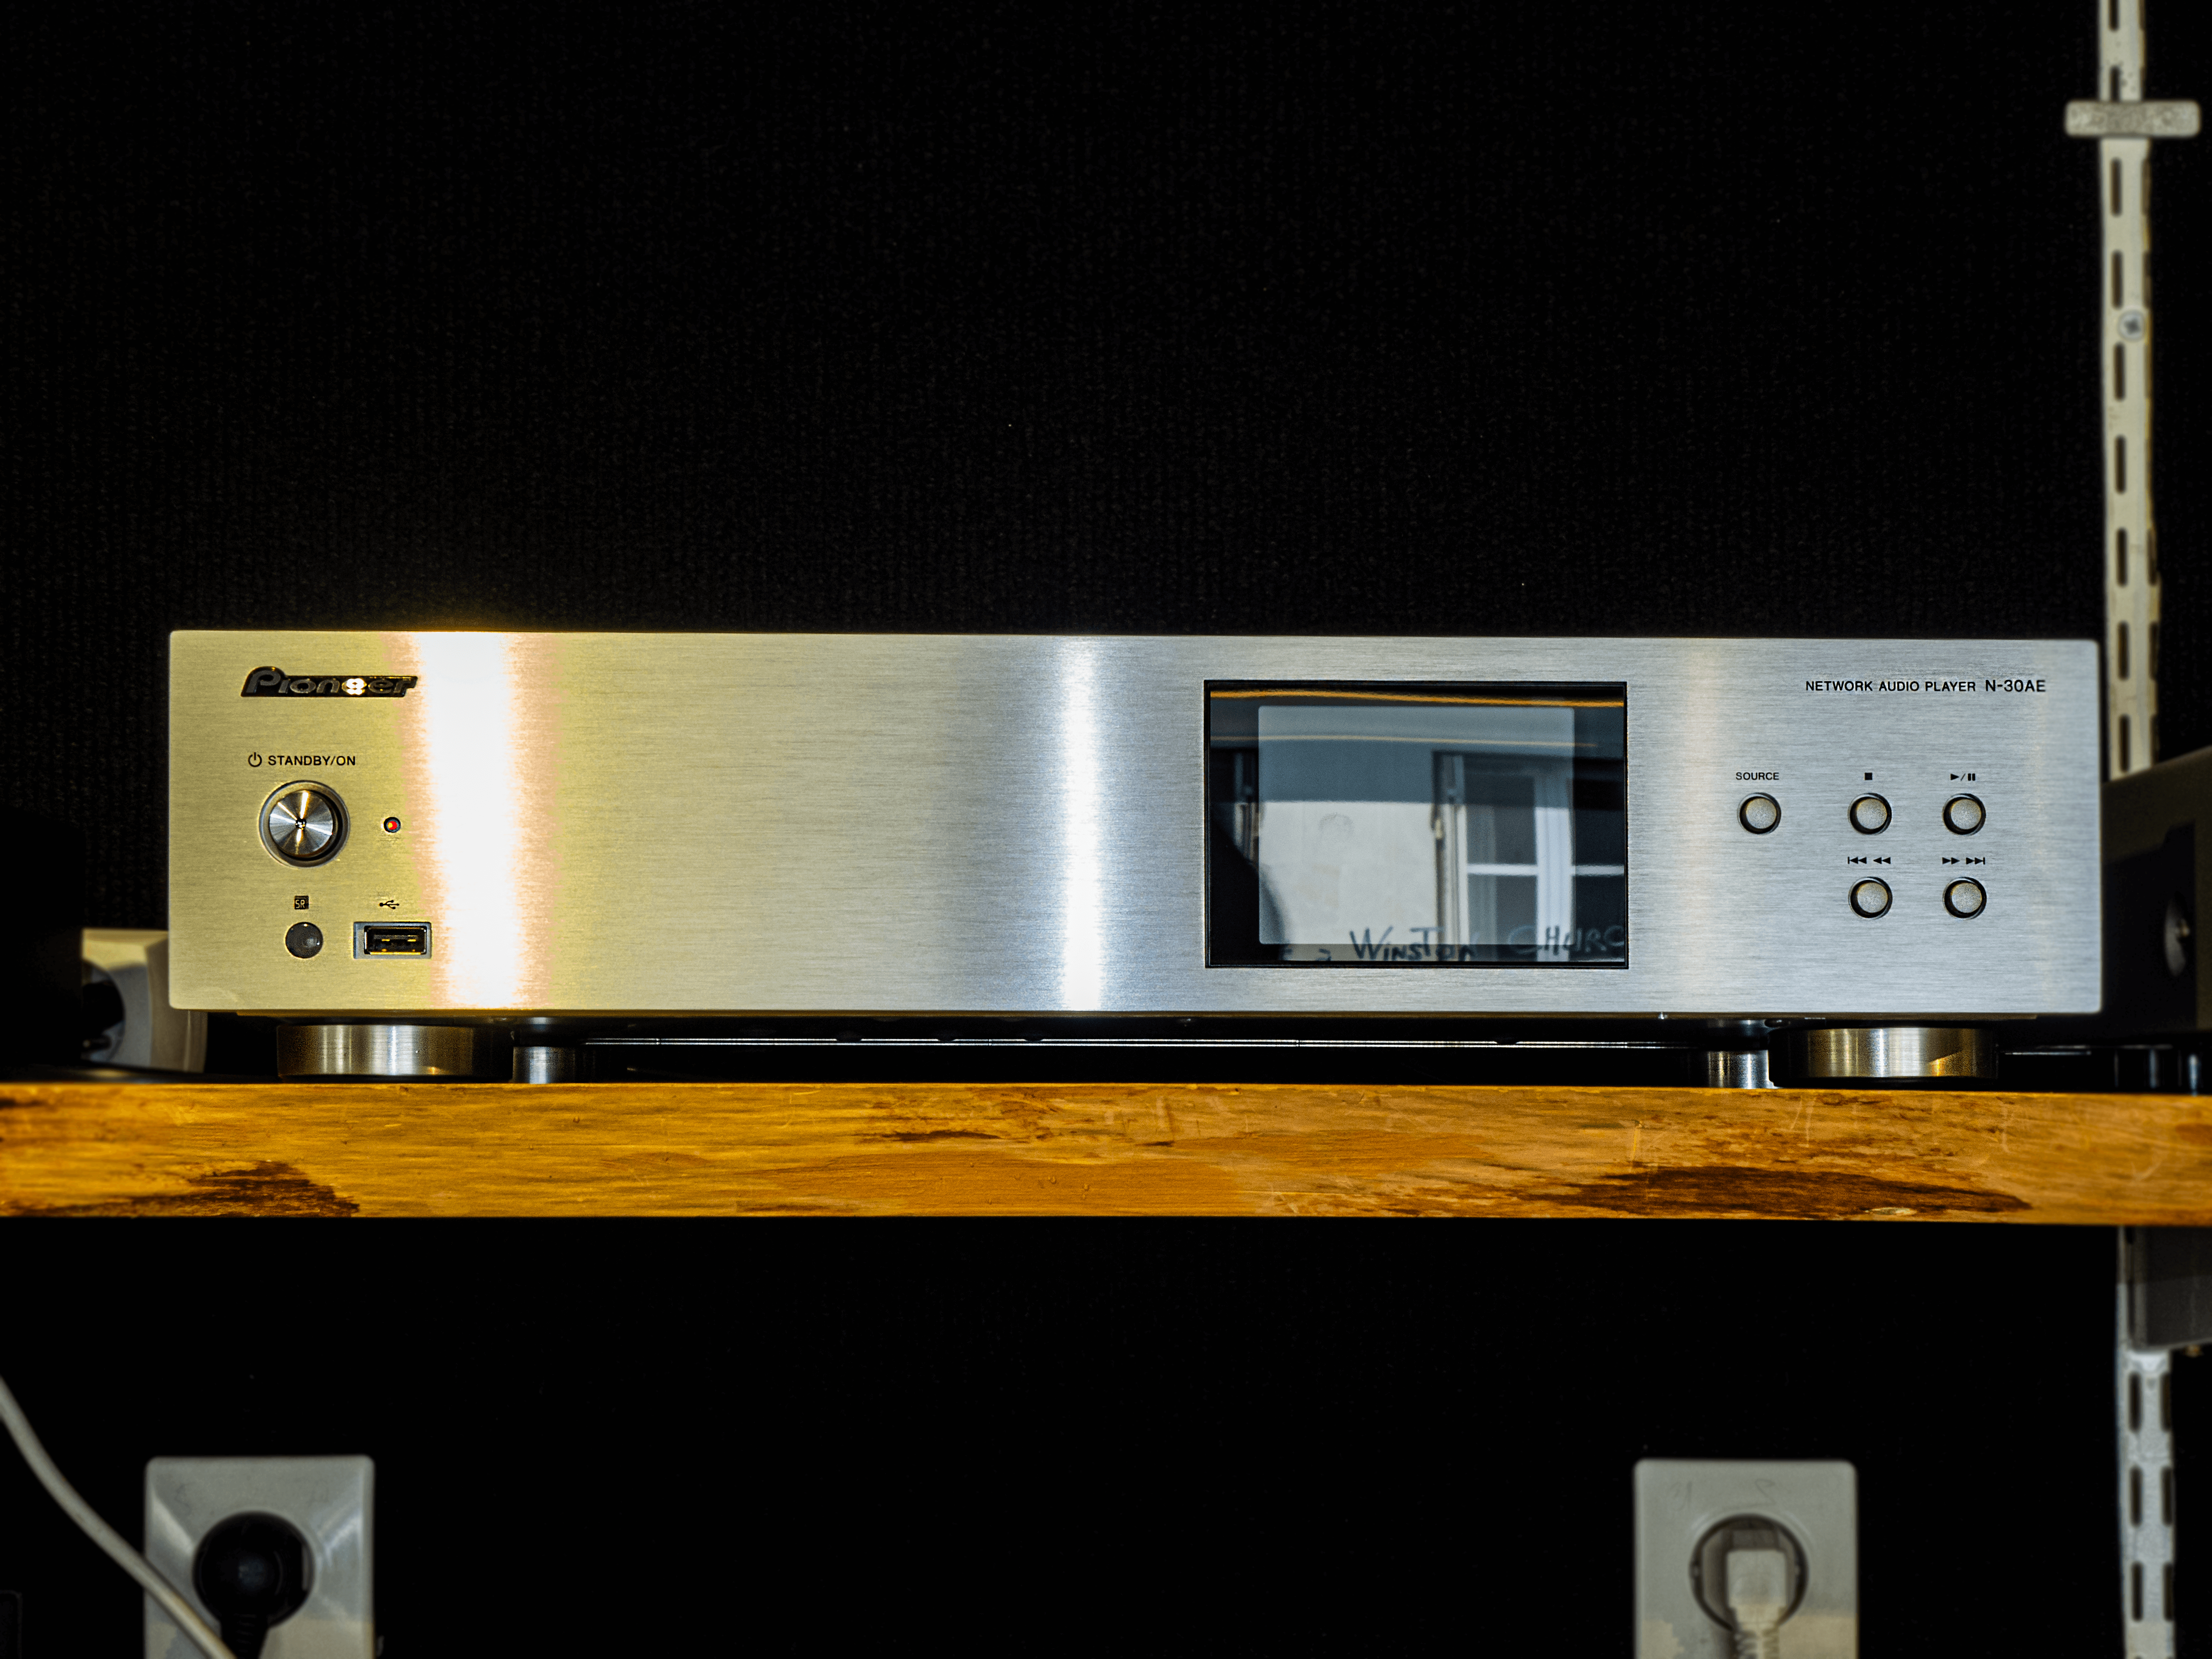 Pioneer N-30AE lecteur audio réseau